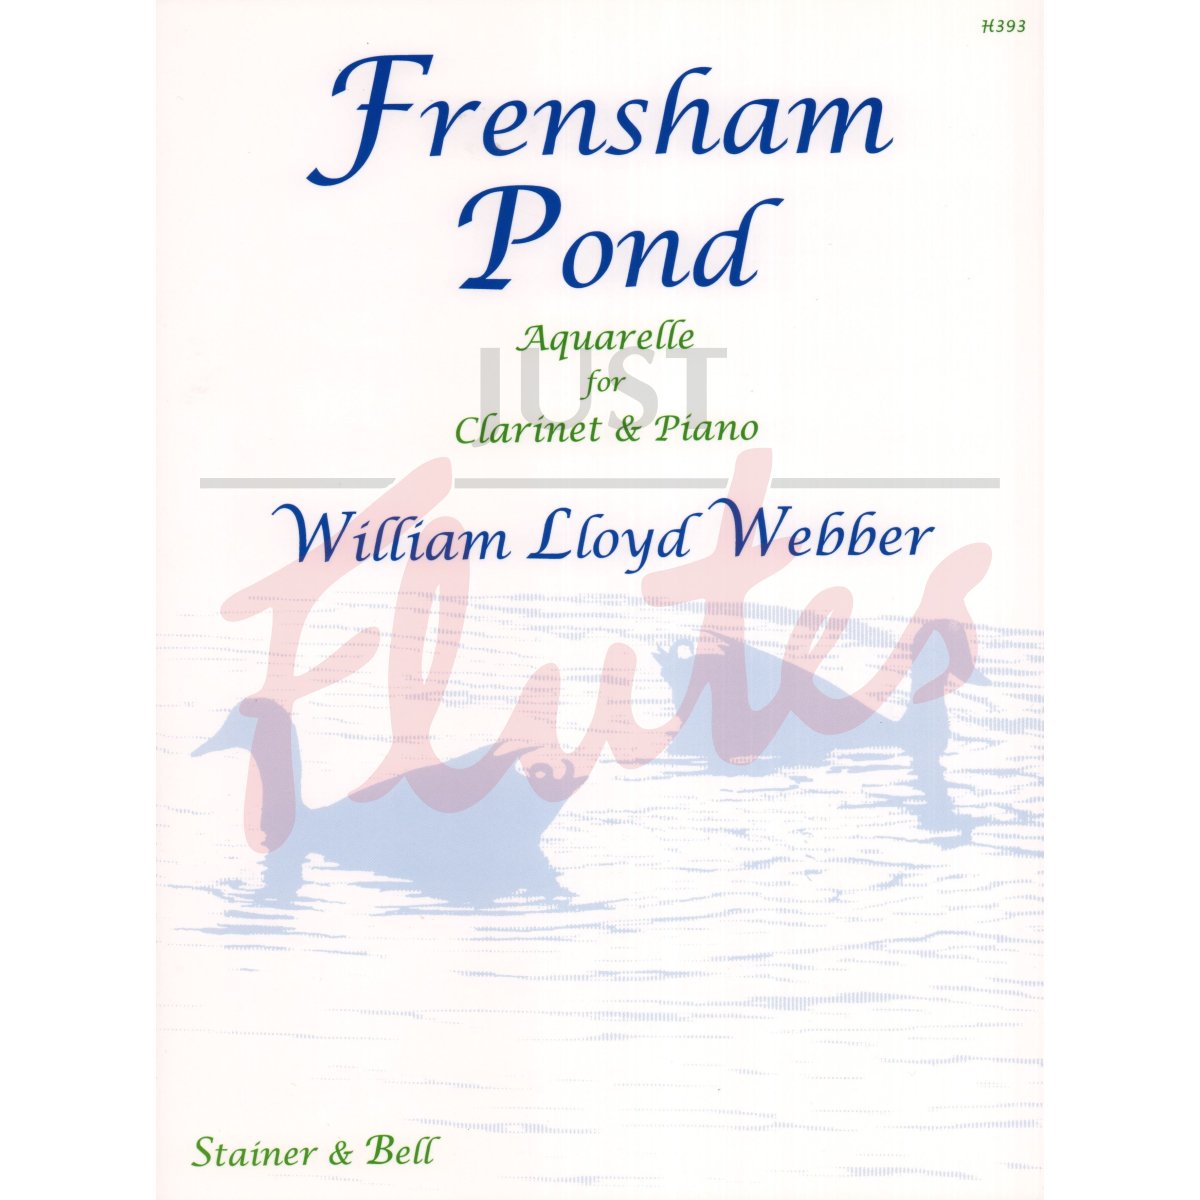 Frensham Pond - Aquarelle for Clarinet and Piano